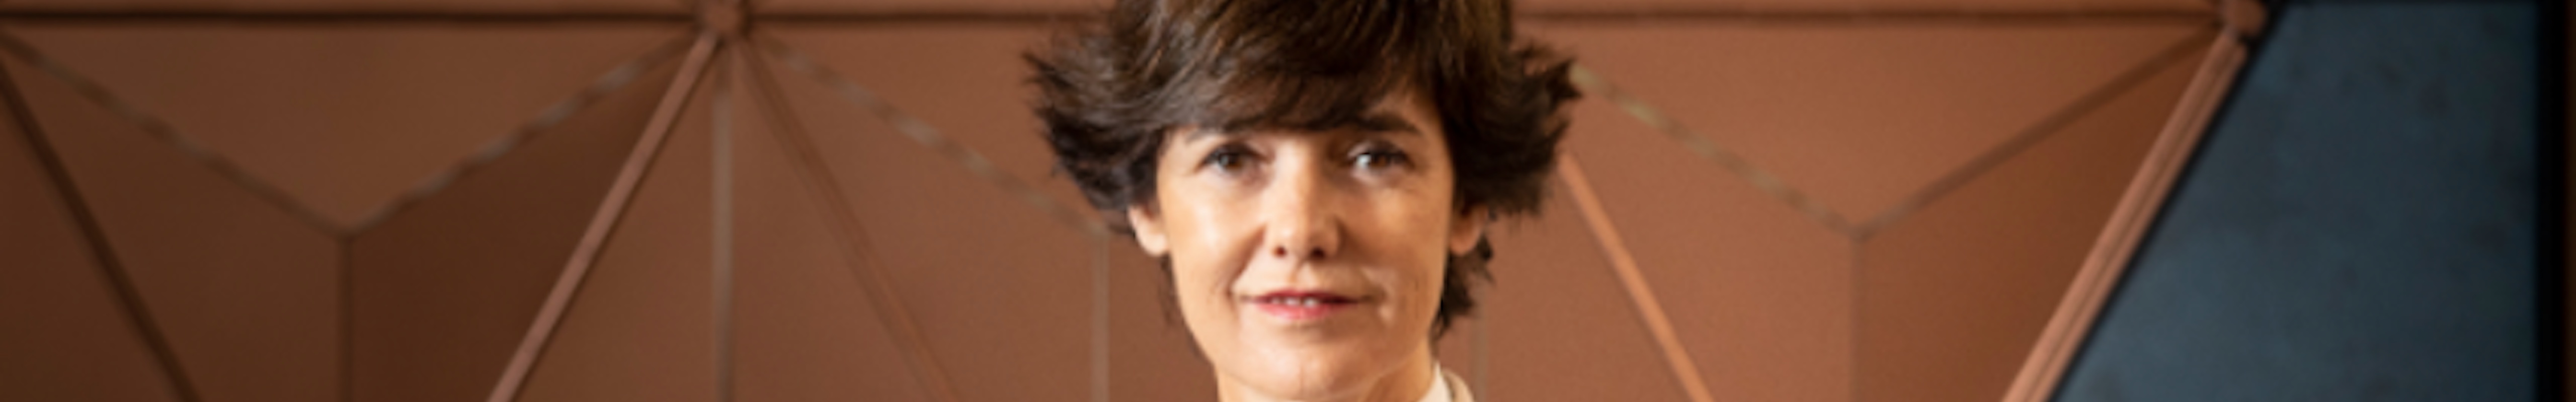 Lourdes de la Sota, nueva Directora de Estrategia Corporativa y Relaciones Institucionales